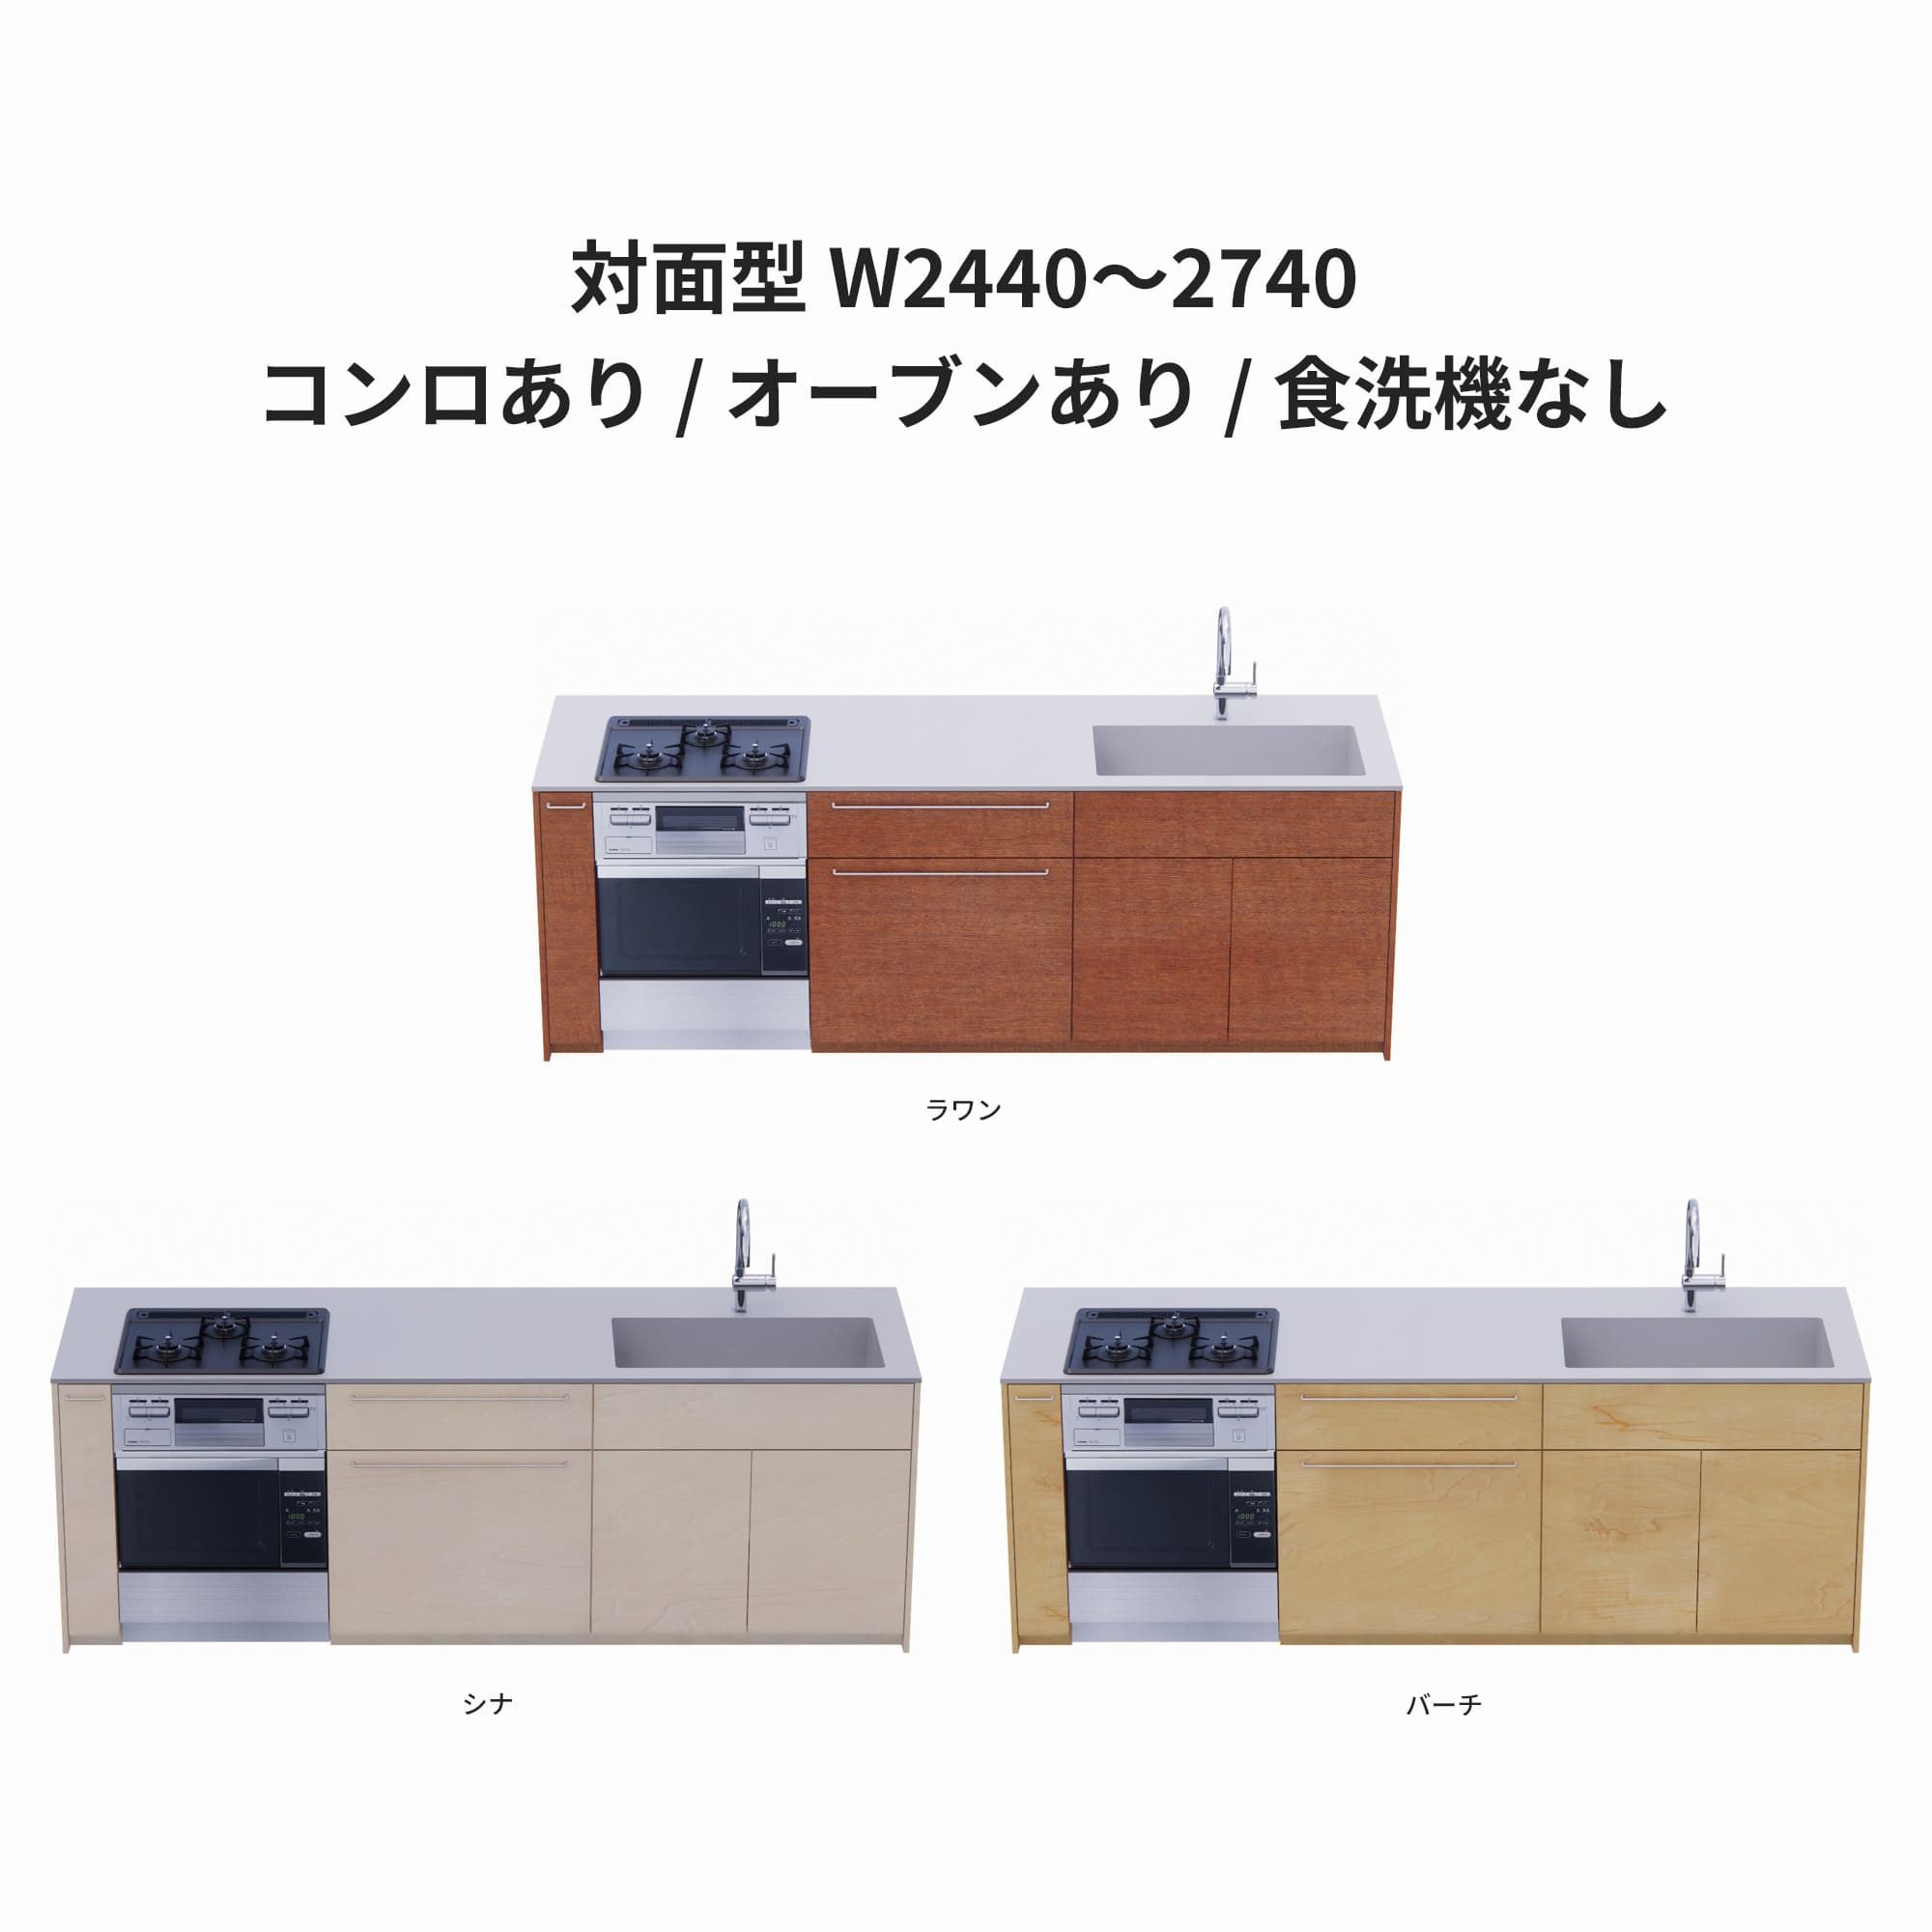 木製システムキッチン 対面型 W2440～2740・コンロあり / オーブンあり / 食洗機なし KB-KC022-43-G183 ラワン・シナ・バーチが選択できます